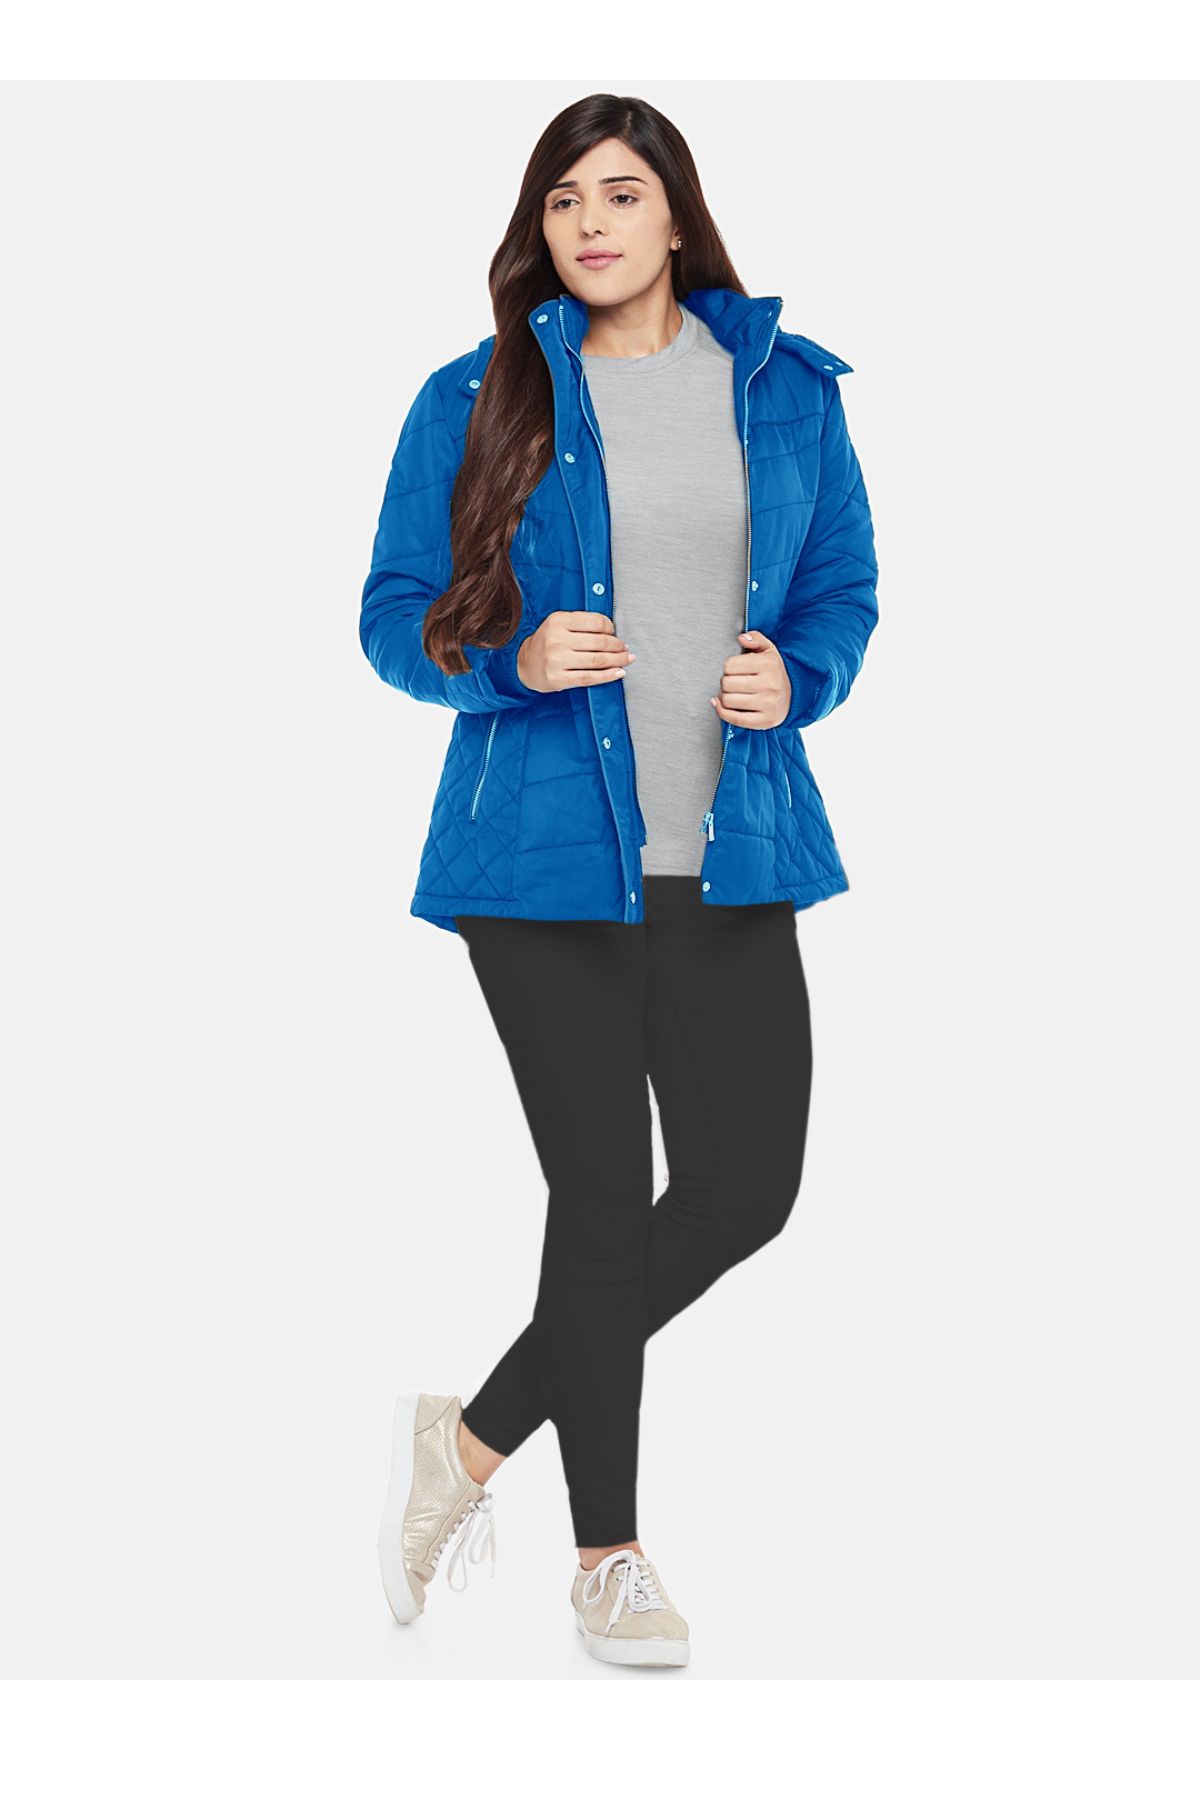 Blue Fleece Lined Puffer Jacket | Women